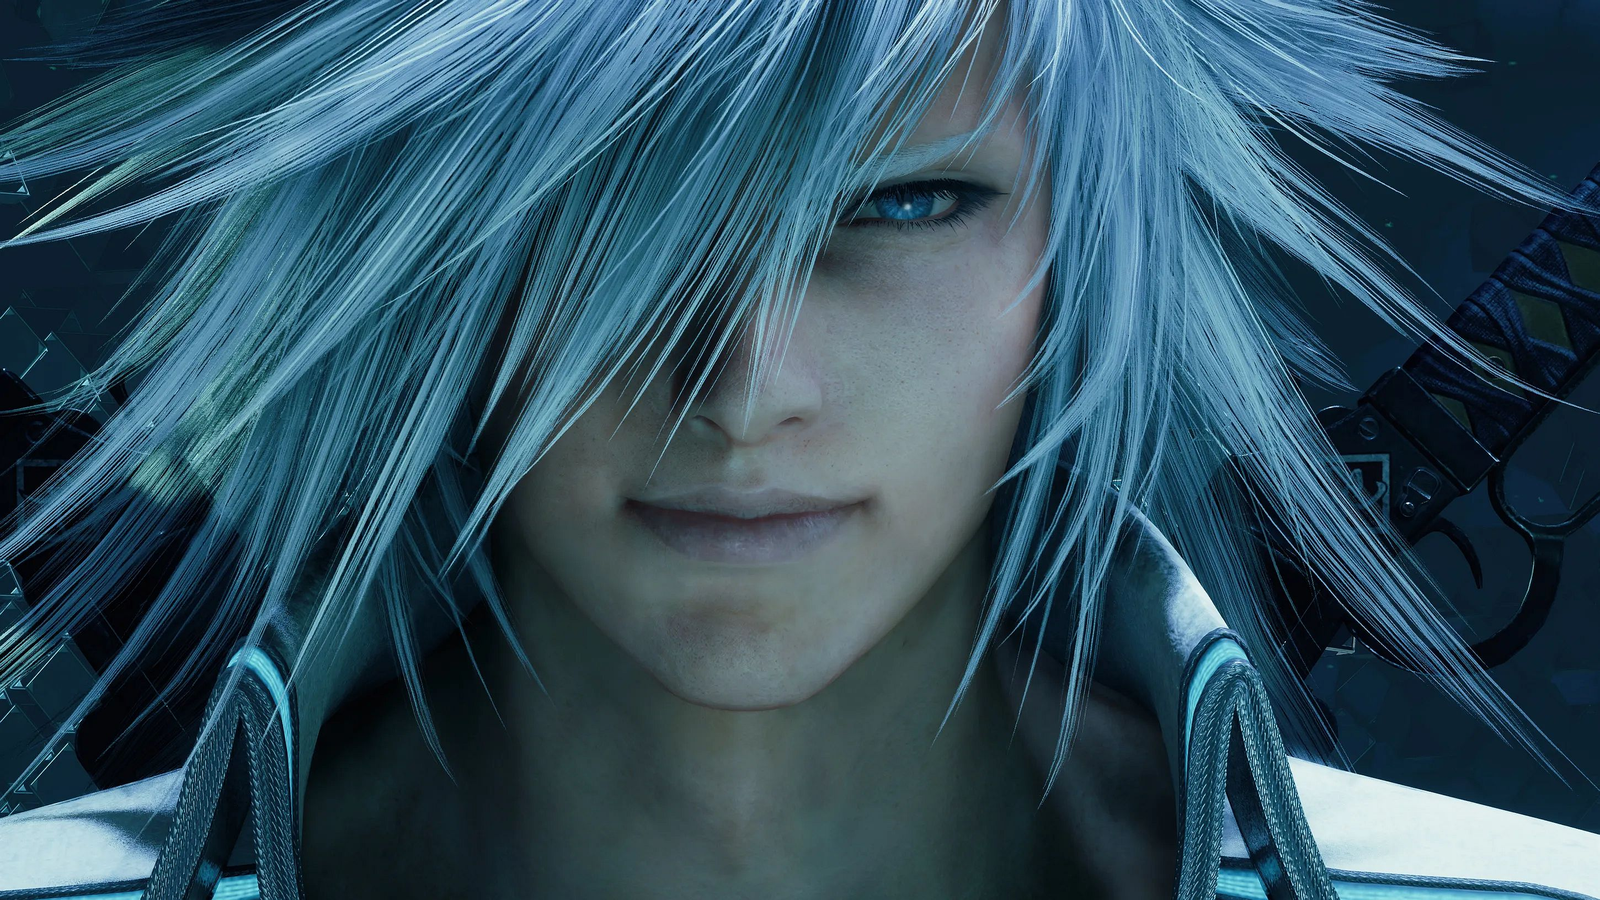 Final Fantasy VII Remake Intergrade PS5 Download Size Is Still Huge